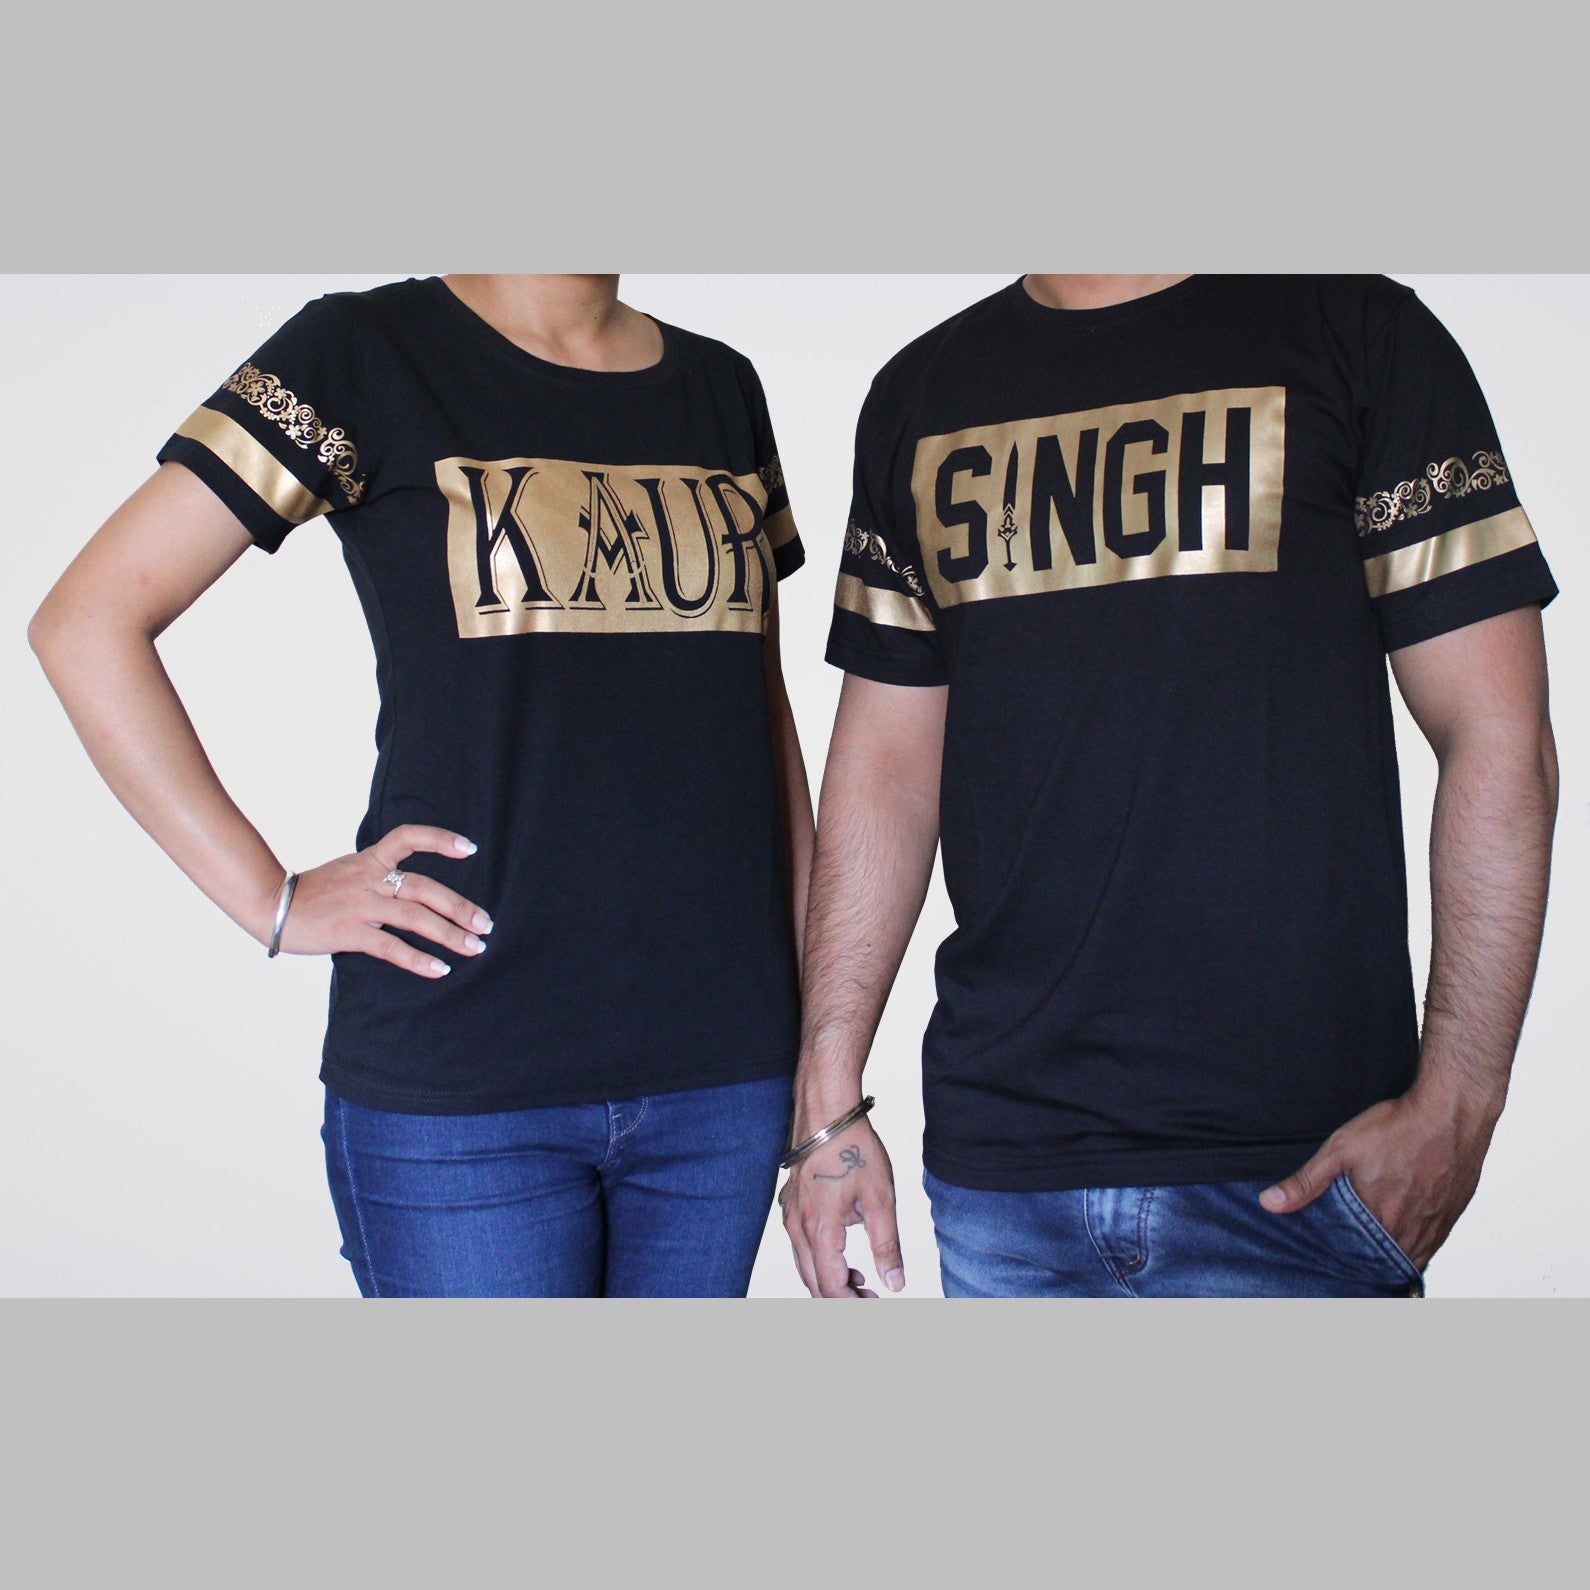 Singh Kaur Punjabi TShirts Pack